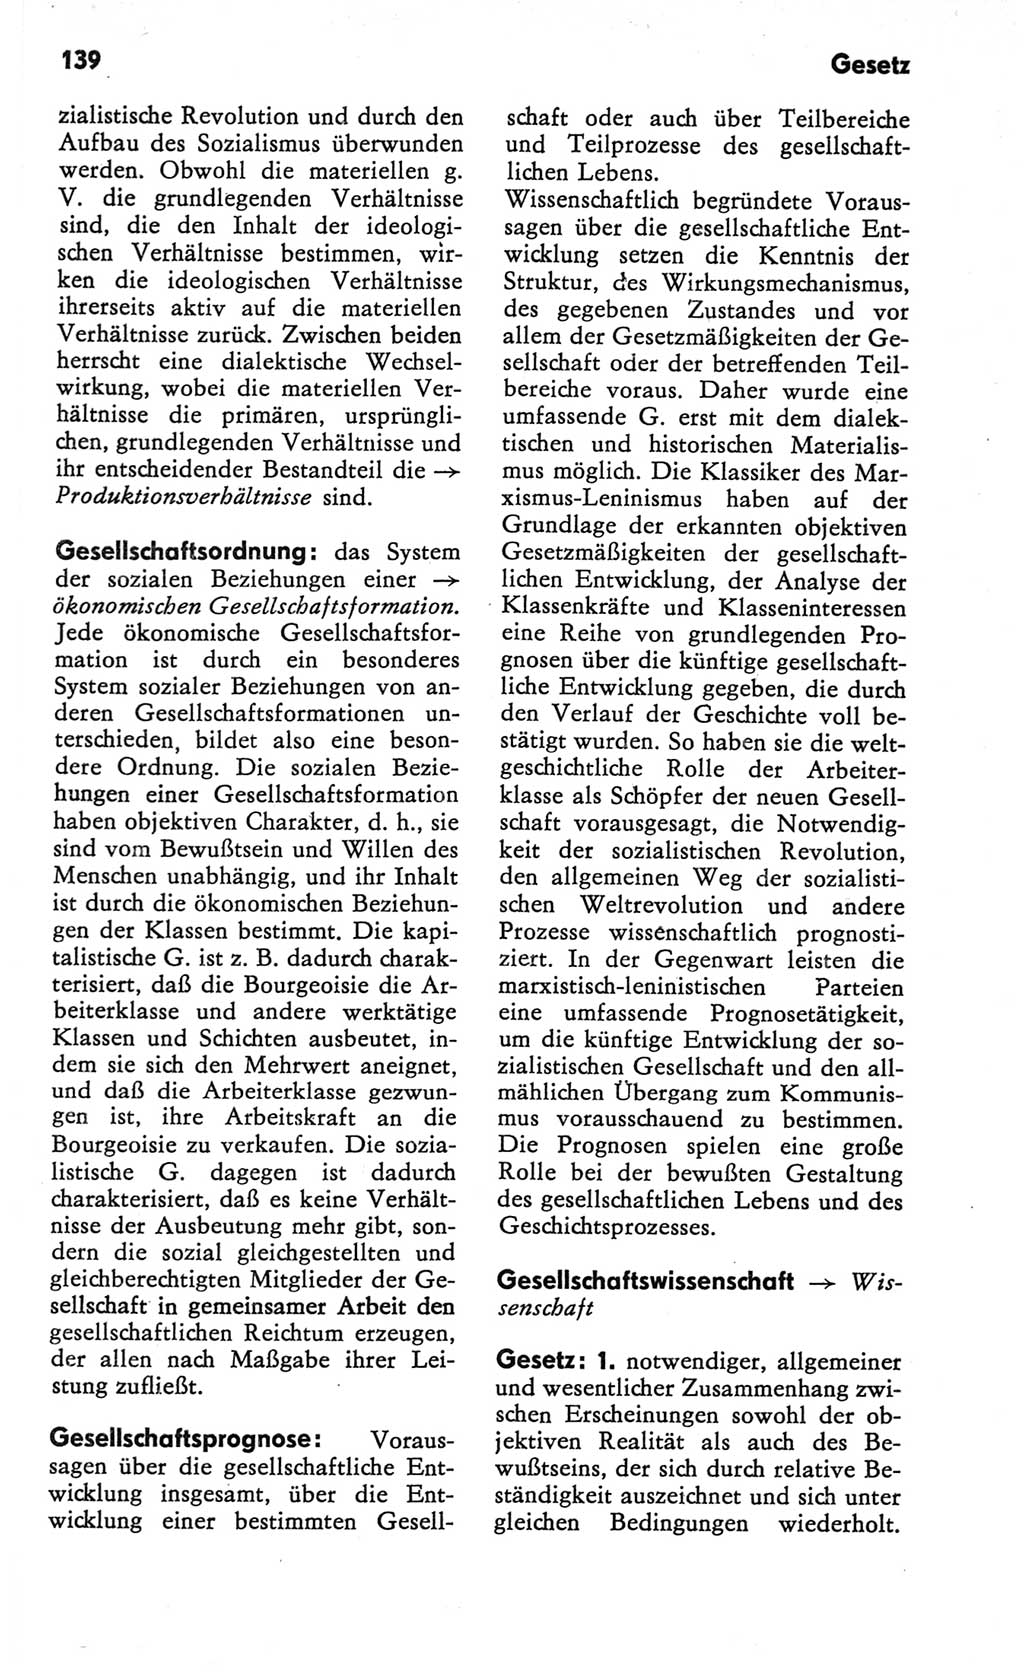 Kleines Wörterbuch der marxistisch-leninistischen Philosophie [Deutsche Demokratische Republik (DDR)] 1982, Seite 139 (Kl. Wb. ML Phil. DDR 1982, S. 139)